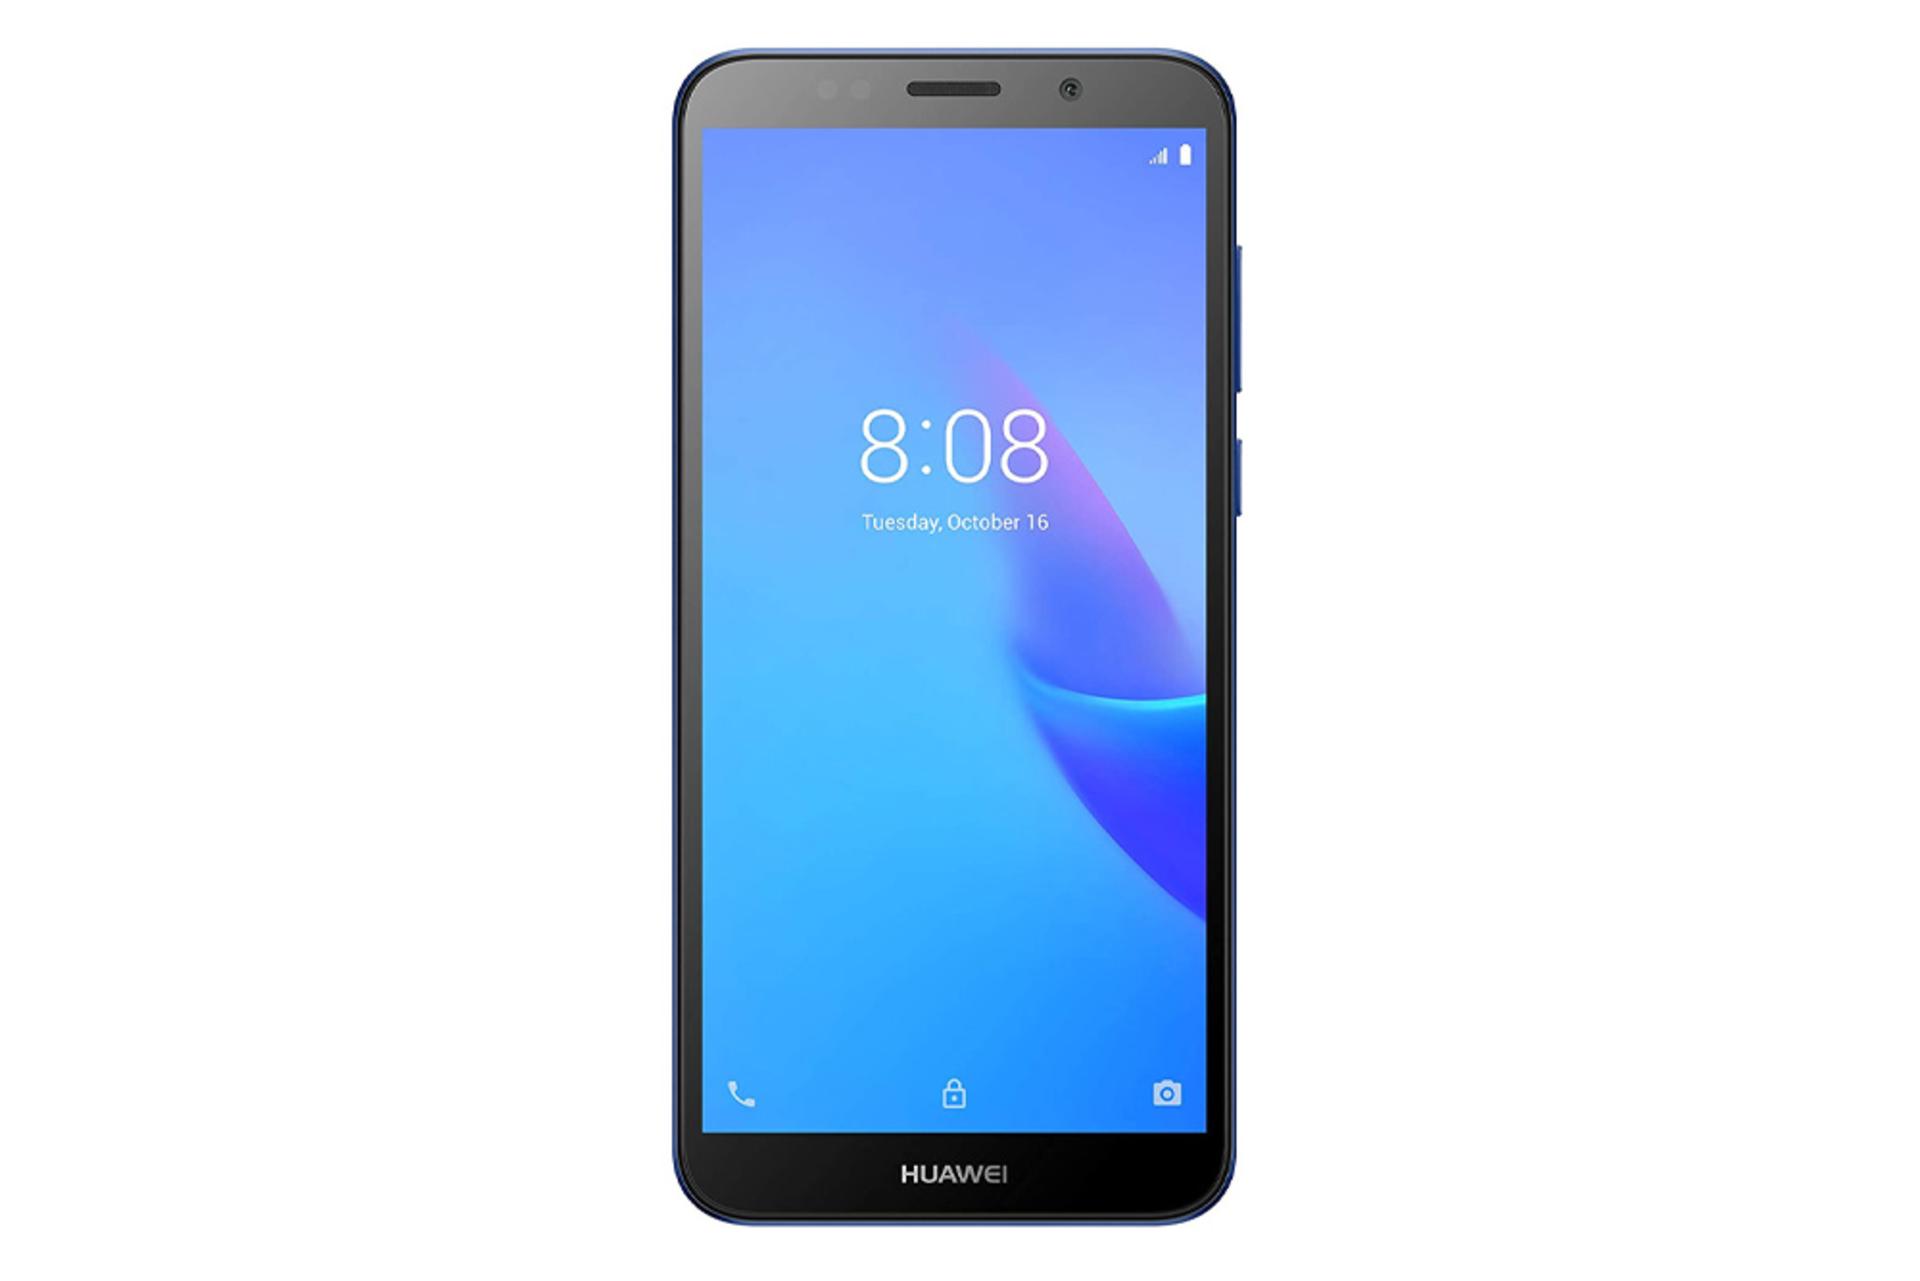 قیمت گوشی Y5 لایت هواوی نسخه 2018 | Huawei Y5 lite 2018 + مشخصات